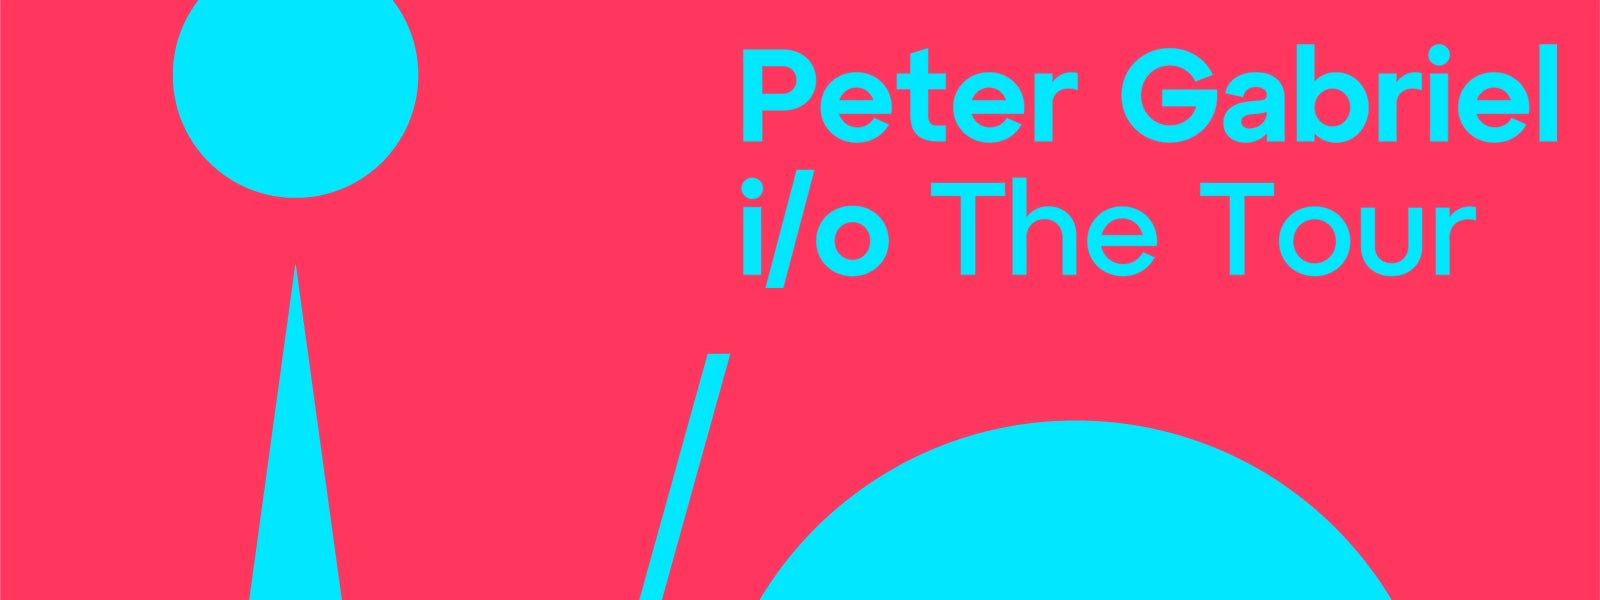 Peter Gabriel: i/o The Tour